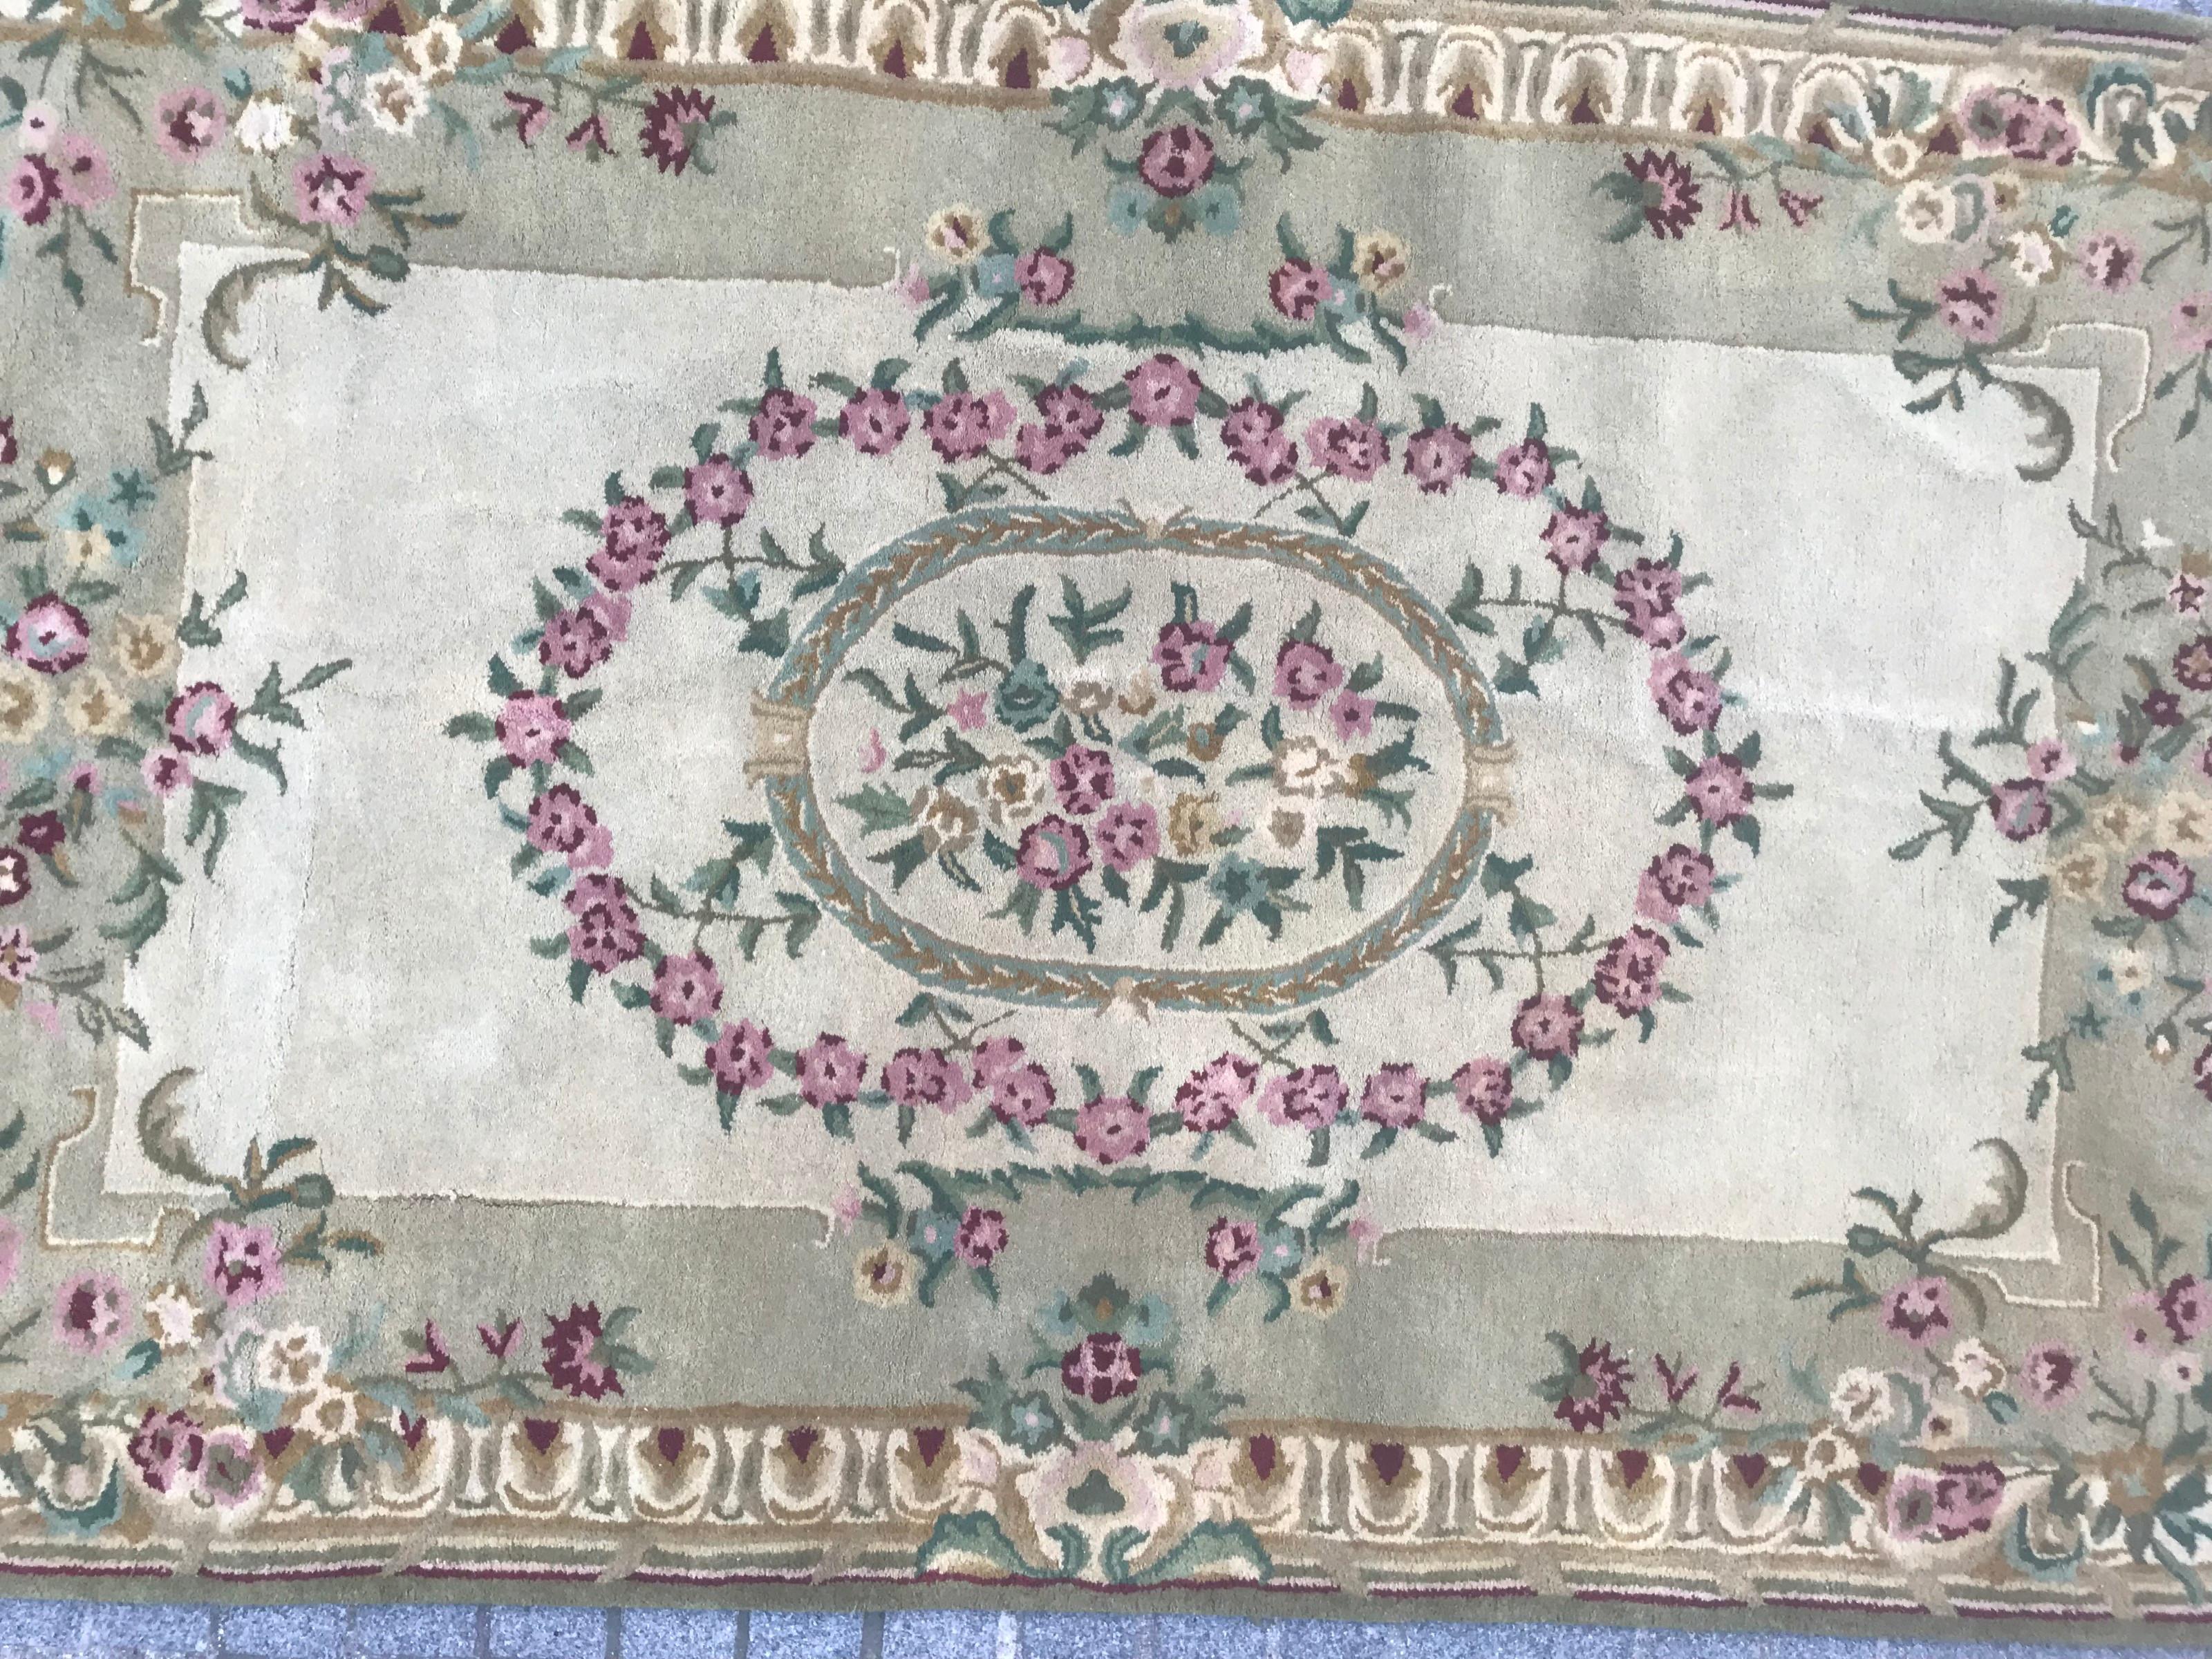 Schöner handgetufteter Teppich mit einem Savonnerie- oder Aubusson-Muster
Samt aus Wolle.

✨✨✨
